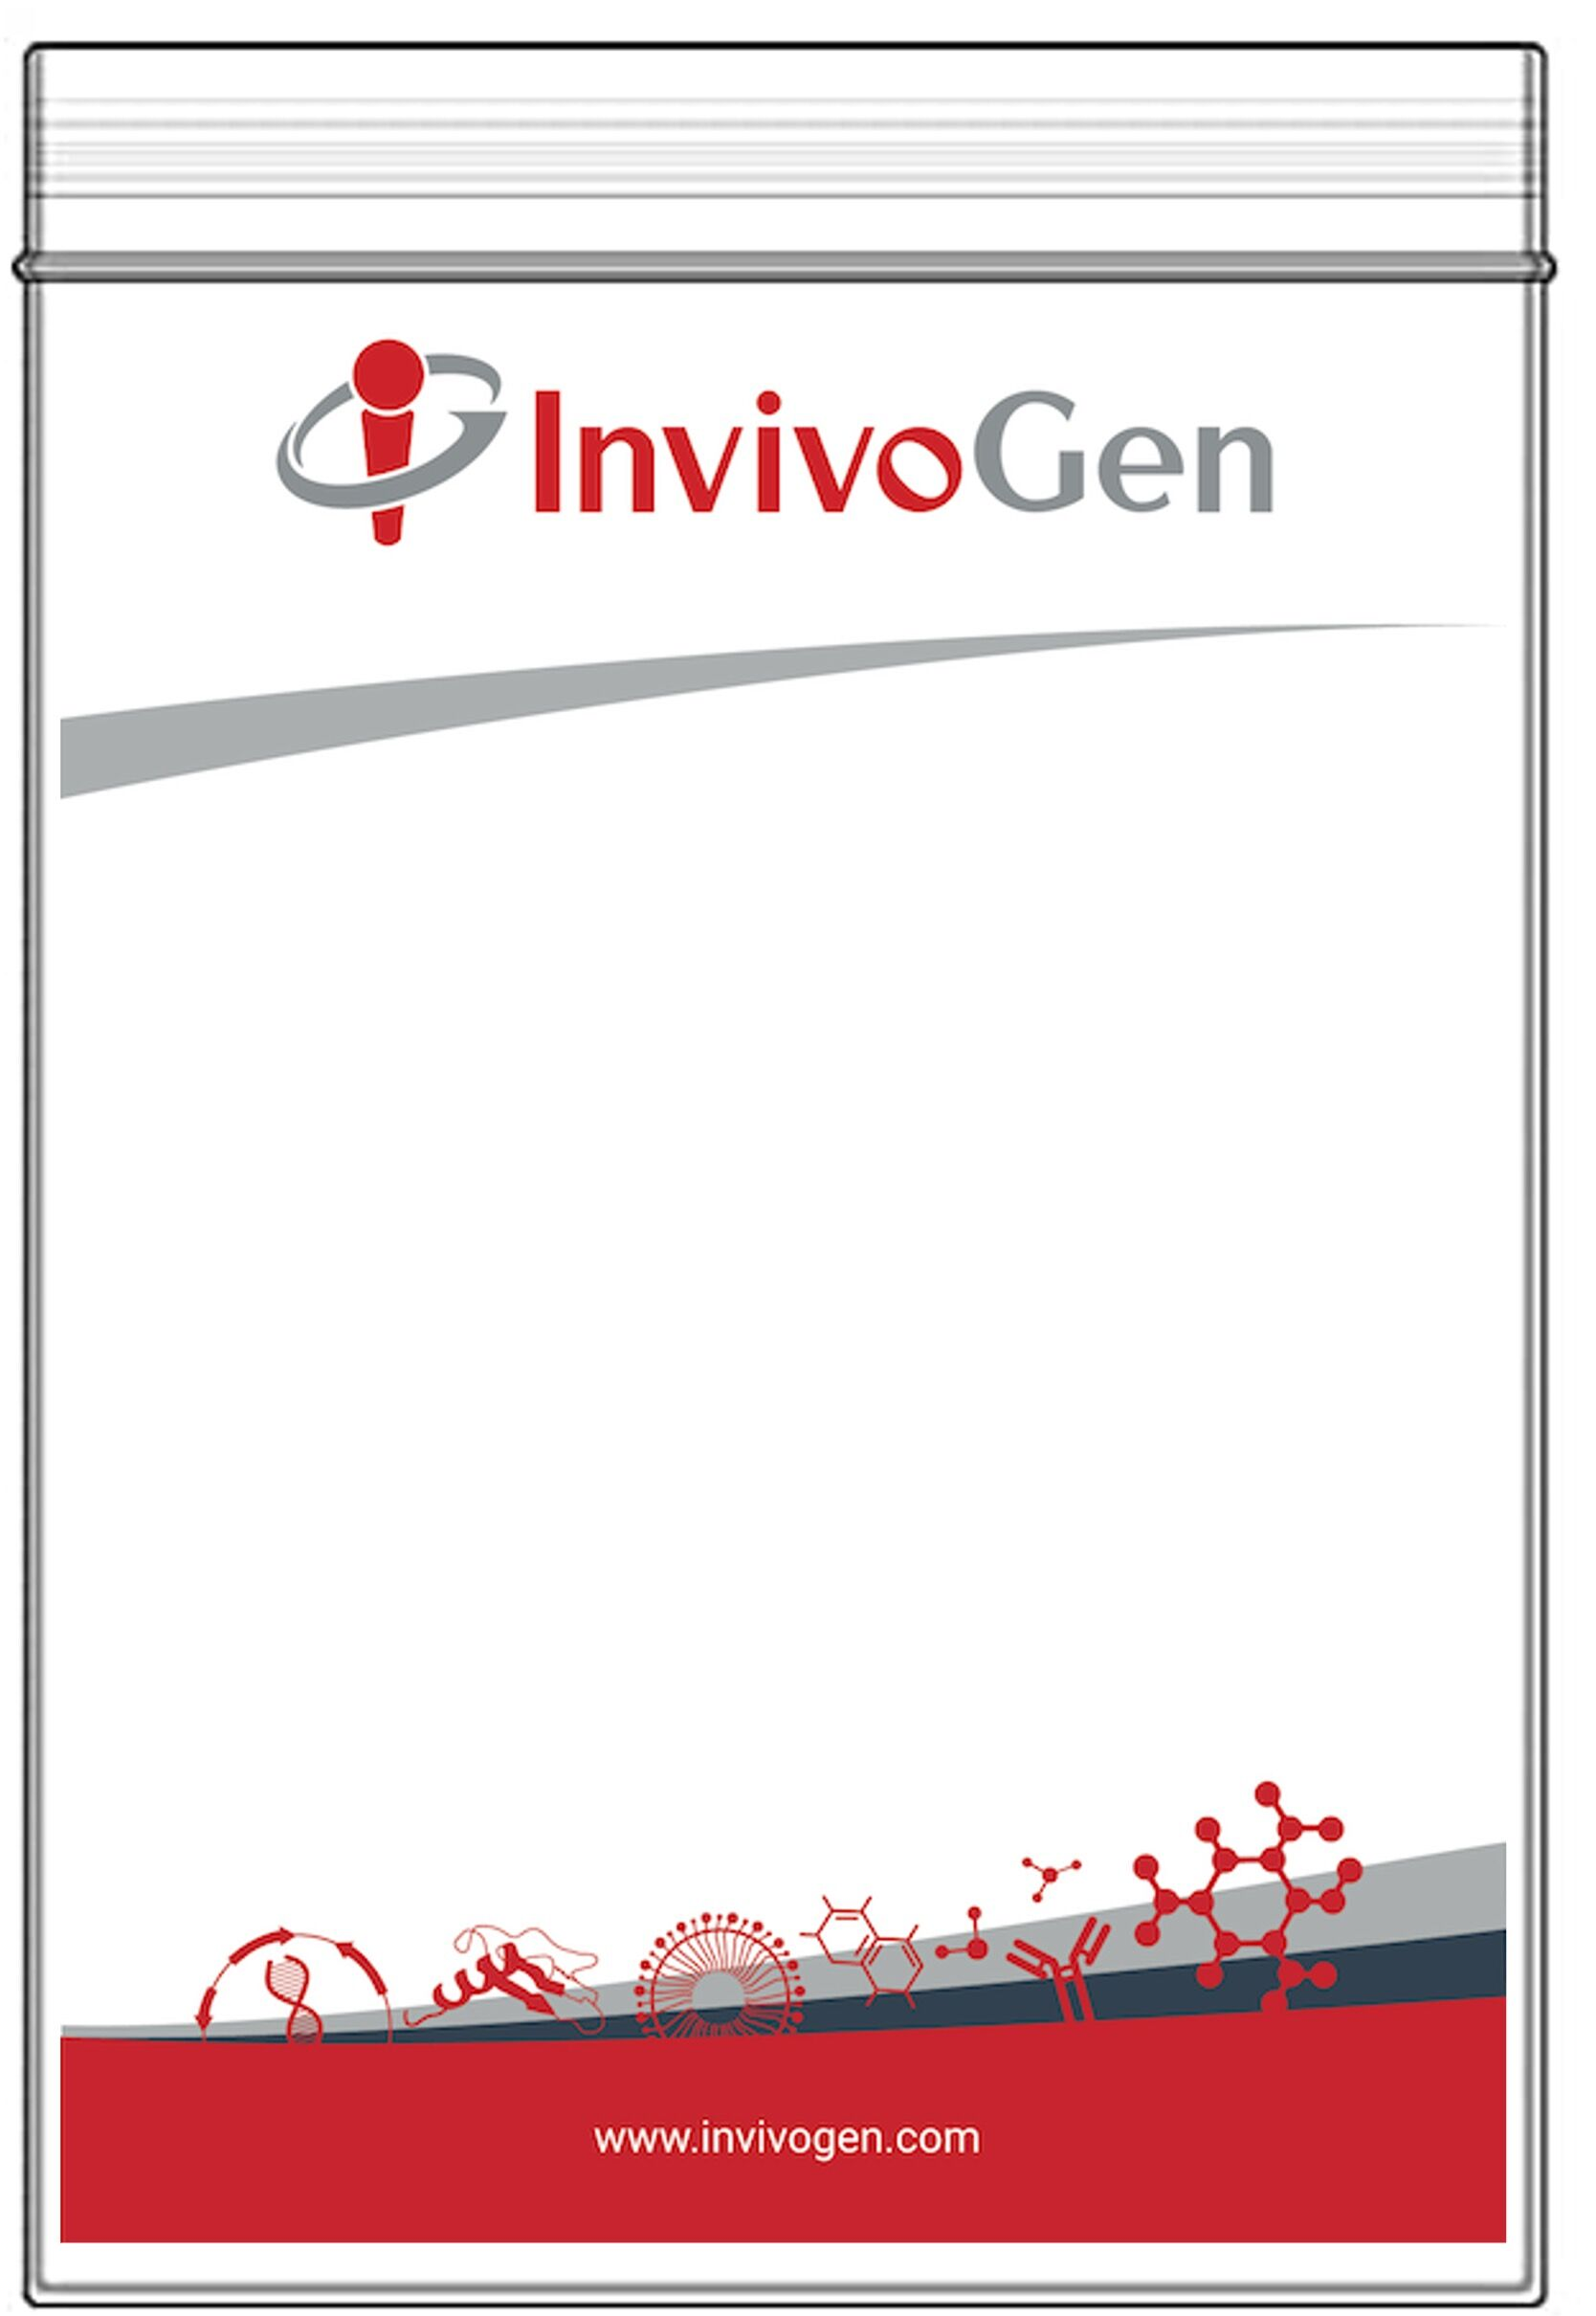 InvivoGen产品更换包装和说明书实行无纸化通知